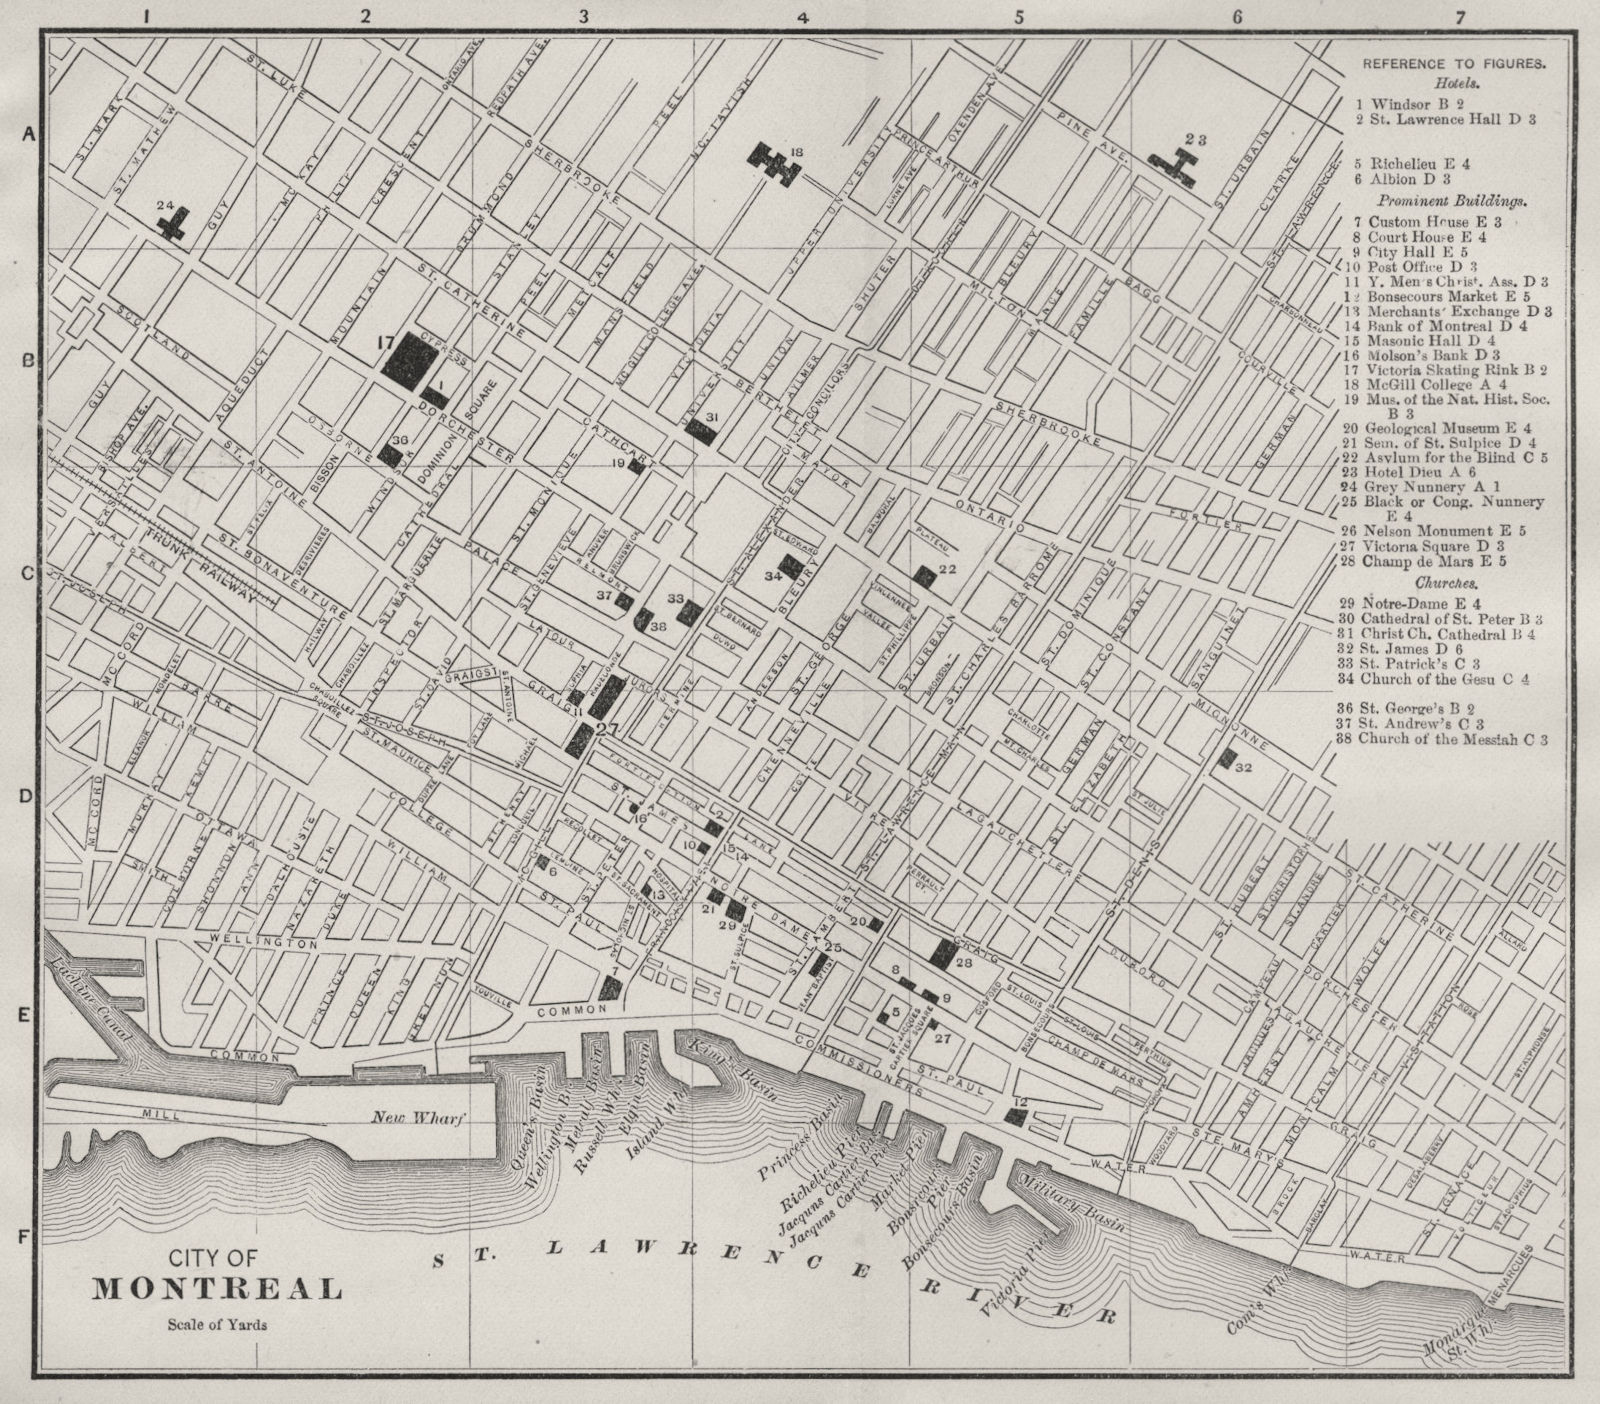 MONTRÉAL MONTREAL, QUEBEC QUÉBEC. Antique city plan 1893 old map